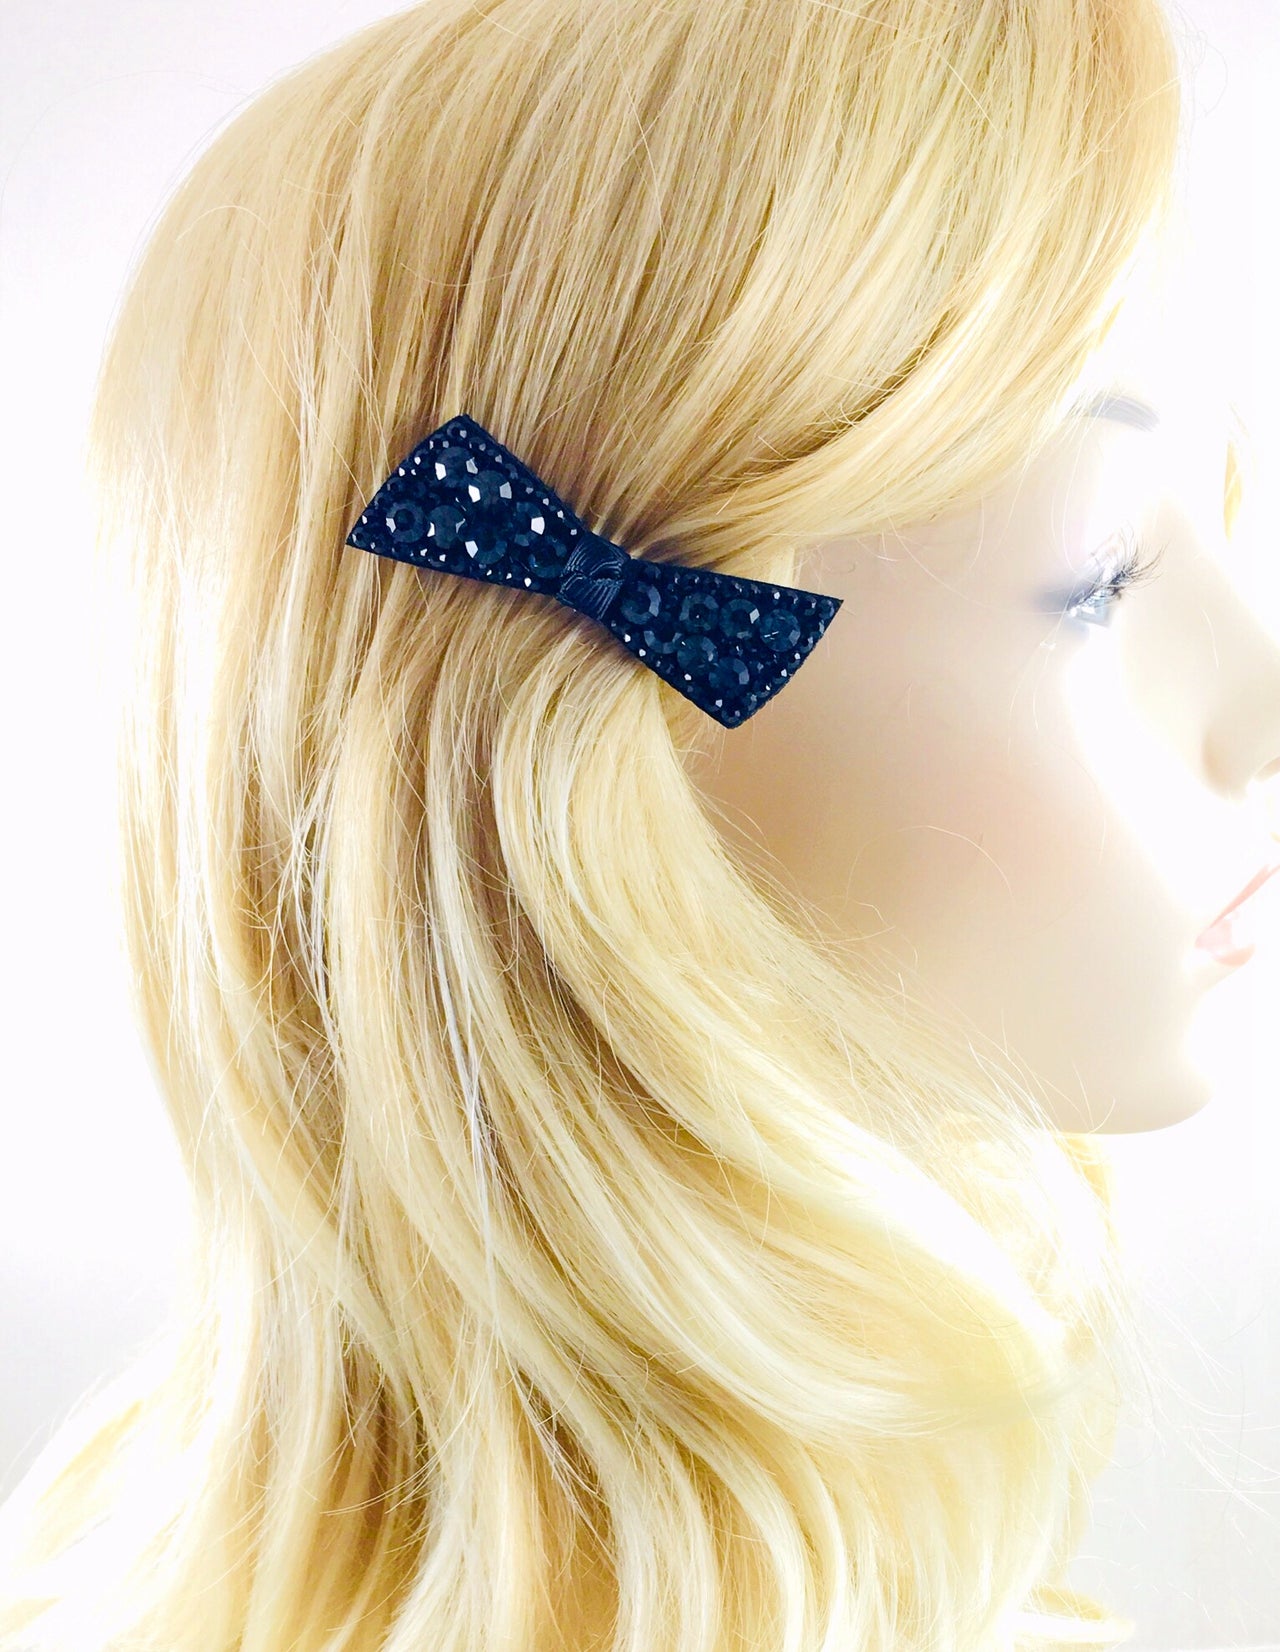 Urban Bow Knot Hair Clip Swarovski Crystal Clamp Acrylic black base Navy Blue, Hair Clip - MOGHANT